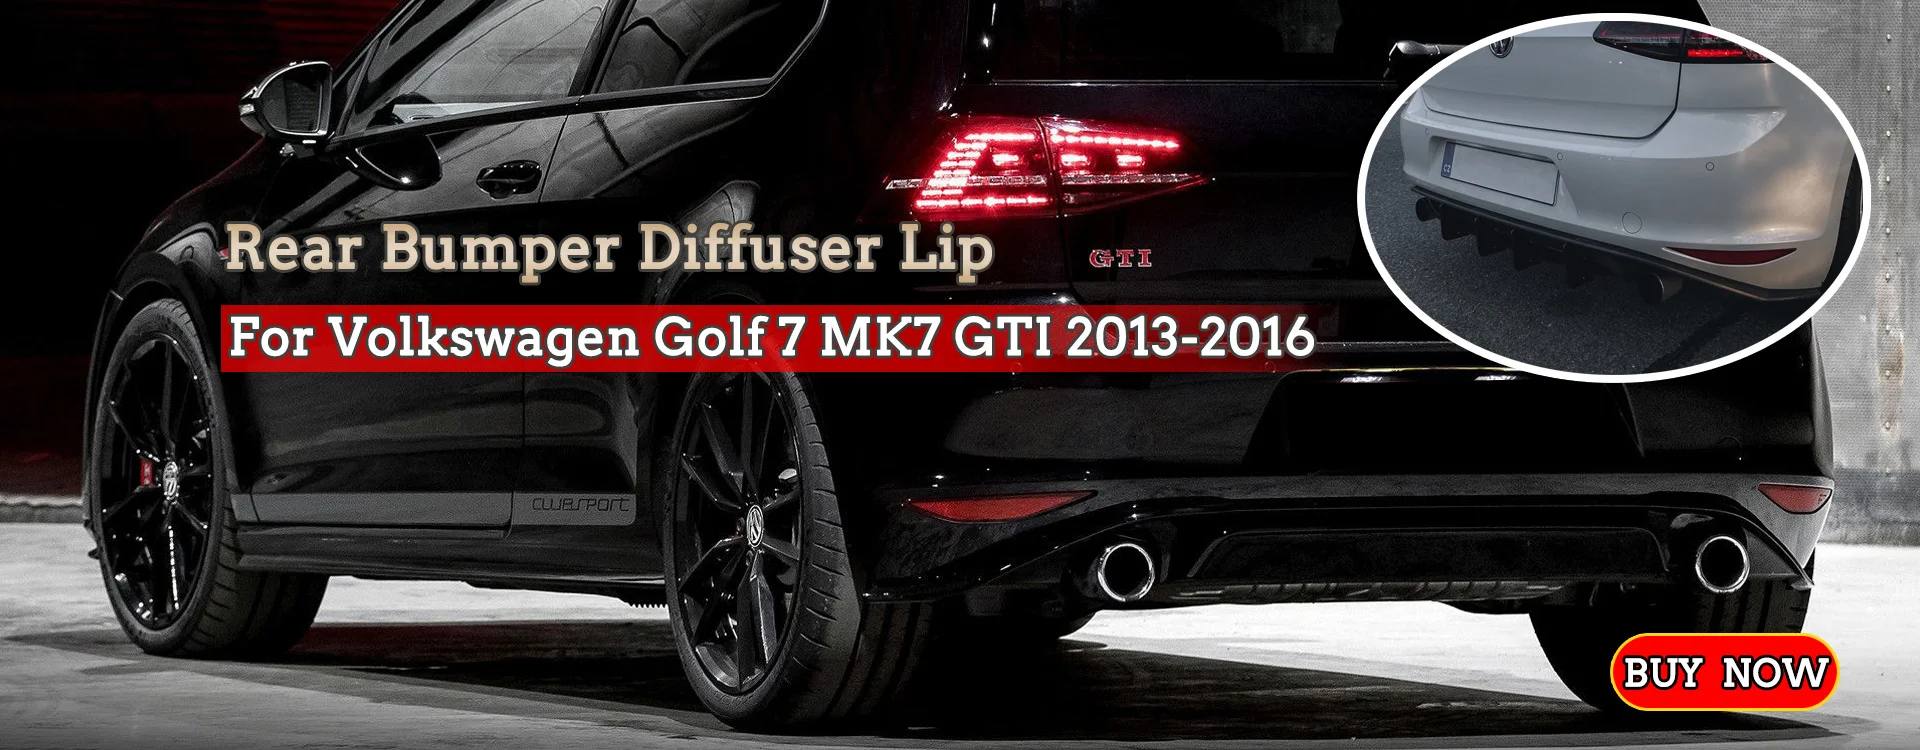 VW GOLF MK4 MK IV 4 FULL BODY KIT 25 ANNIVERSARY FRONT SKIRT + REAR+ SS+  SPOILER